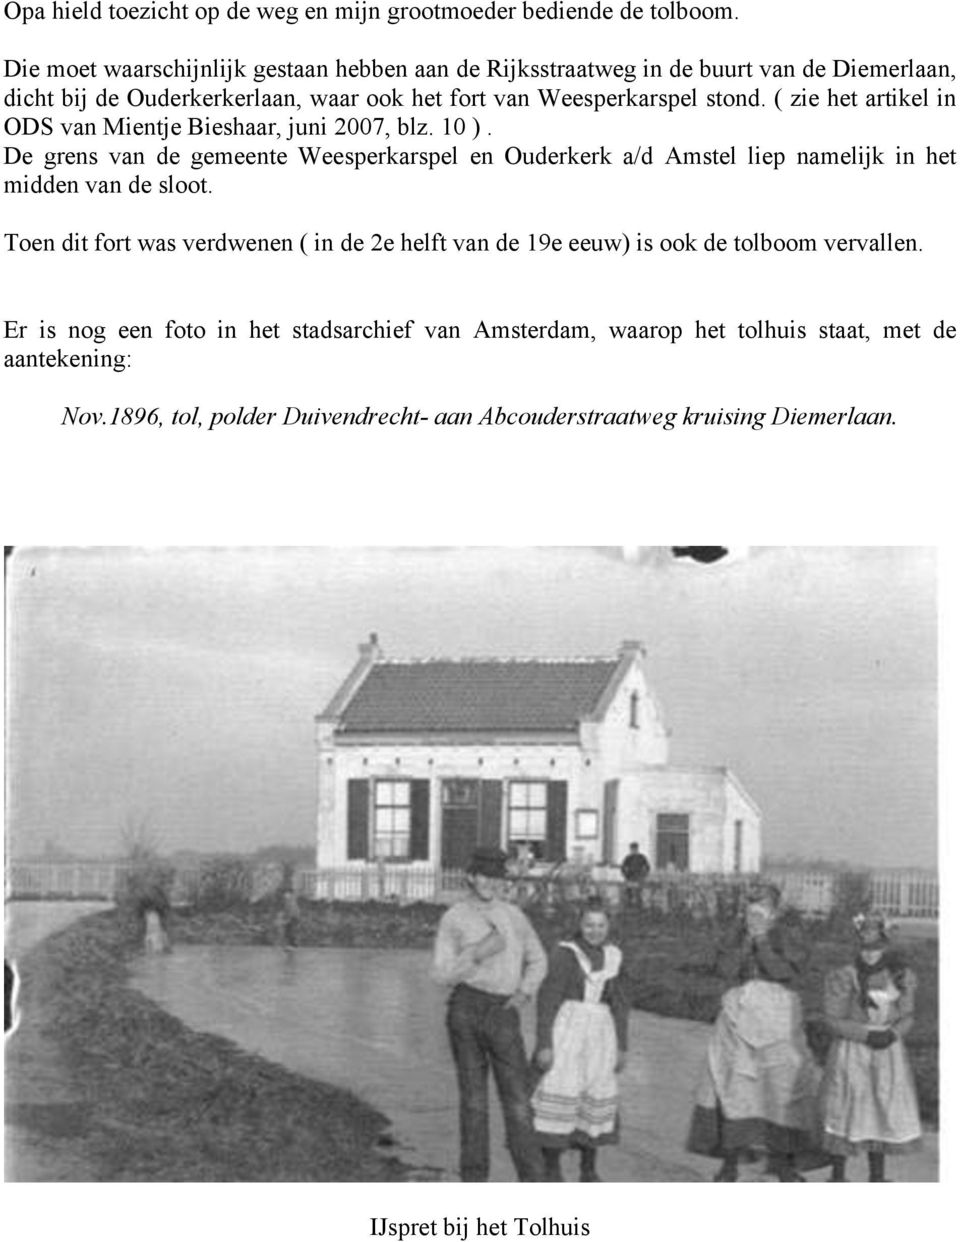 ( zie het artikel in ODS van Mientje Bieshaar, juni 2007, blz. 10 ). De grens van de gemeente Weesperkarspel en Ouderkerk a/d Amstel liep namelijk in het midden van de sloot.